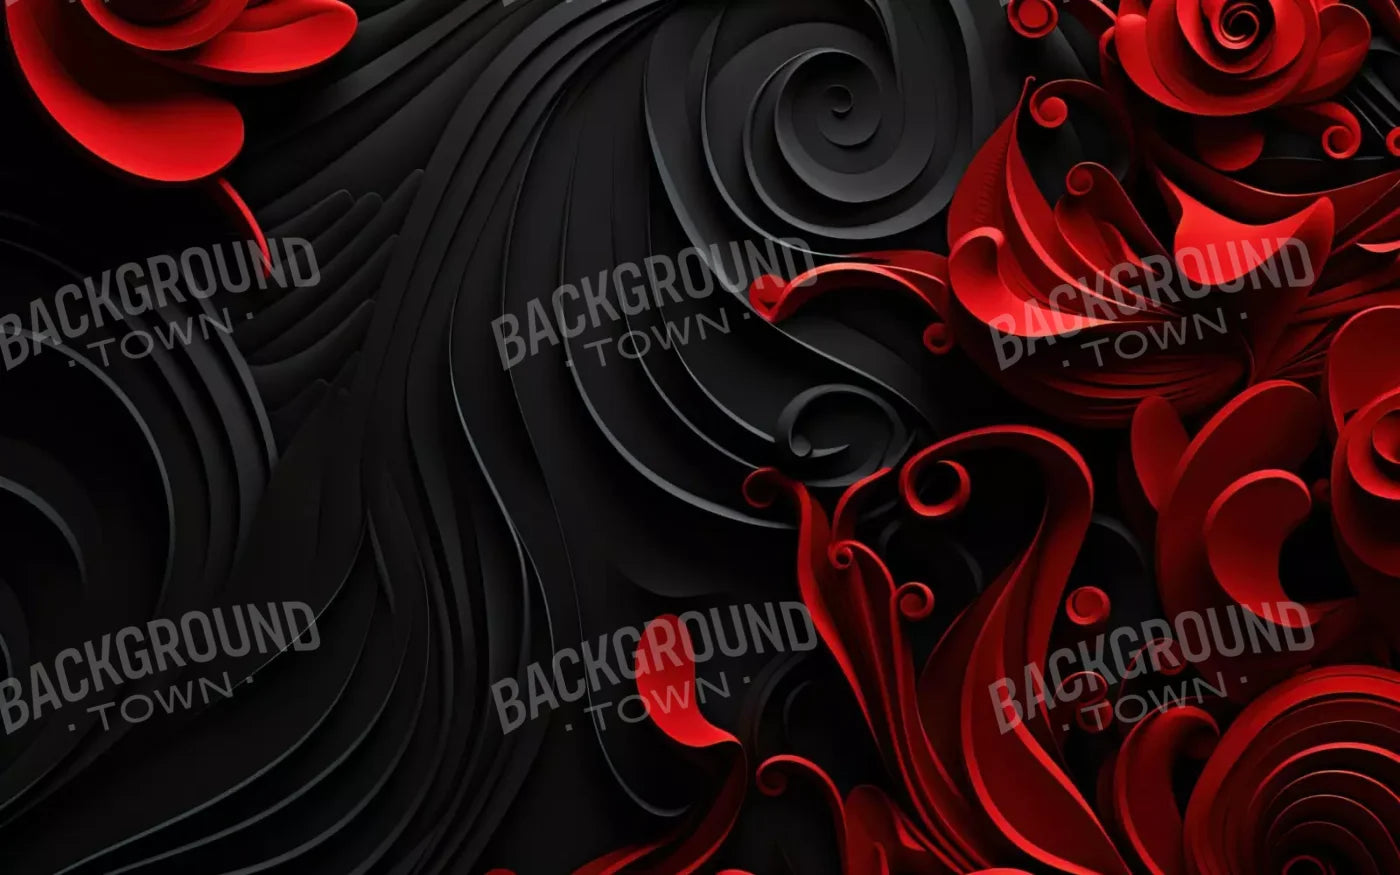 Opulence Iii 16’X10’ Ultracloth (192 X 120 Inch) Backdrop